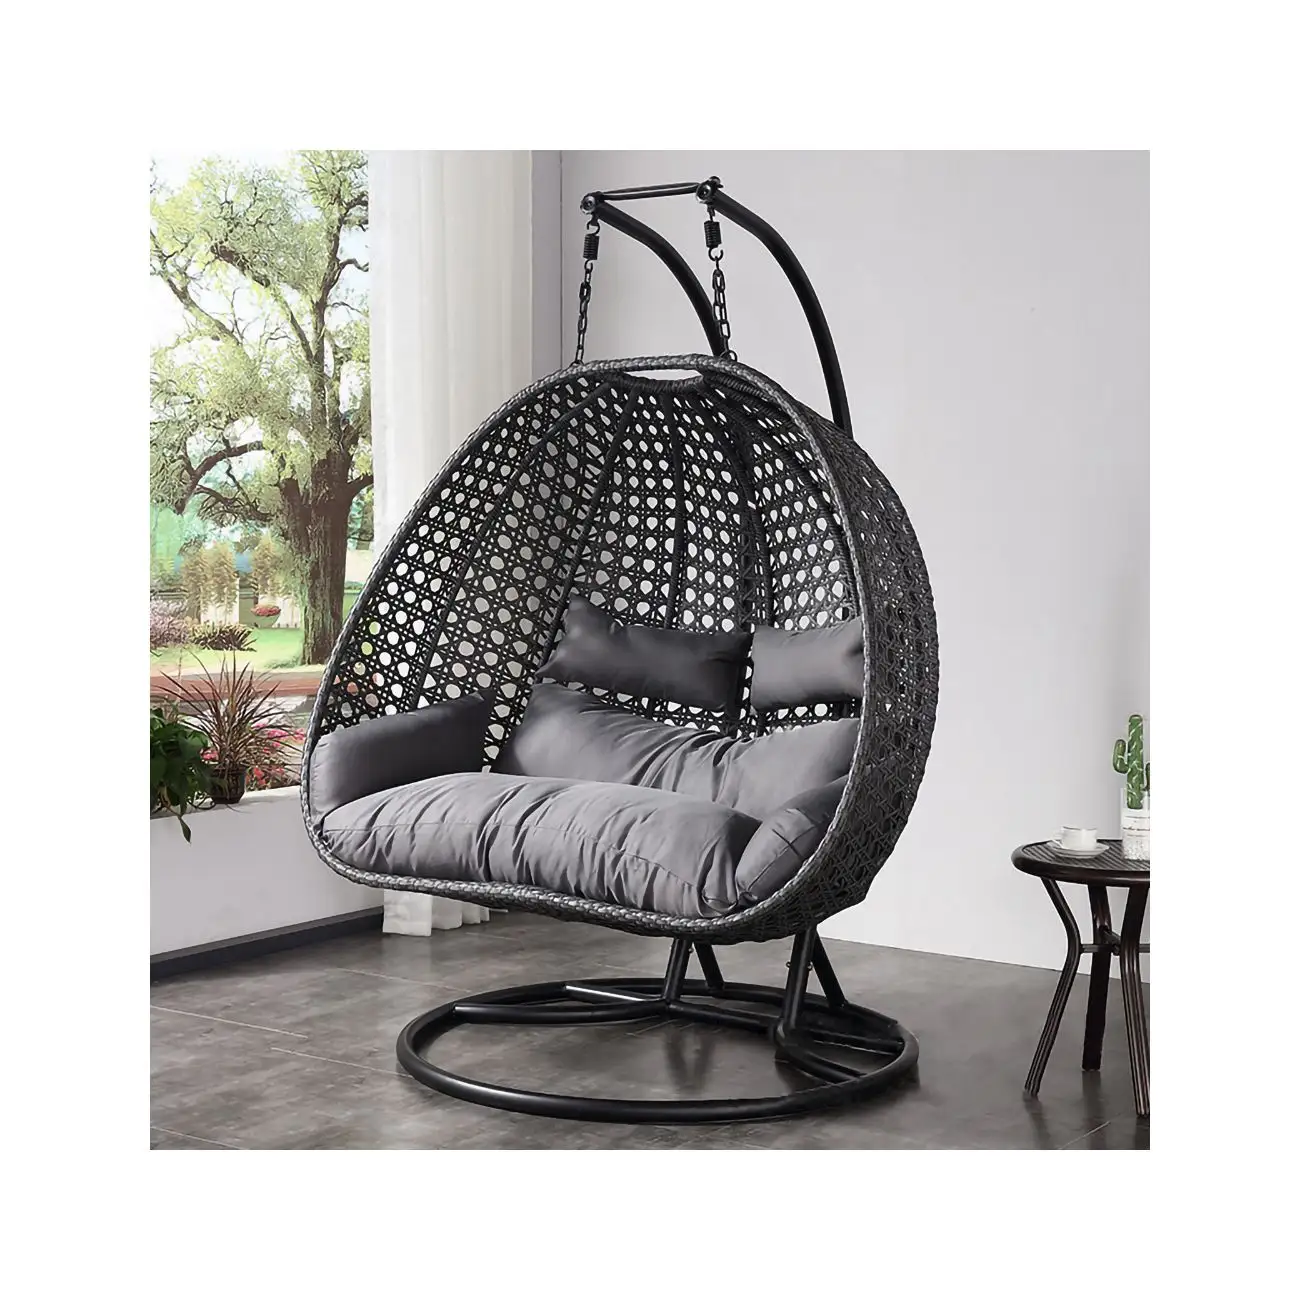 Chaise œuf suspendue en rotin moderne avec support balançoires de patio panier à bascule chaise hamac balcon cour jardin mobilier d'extérieur